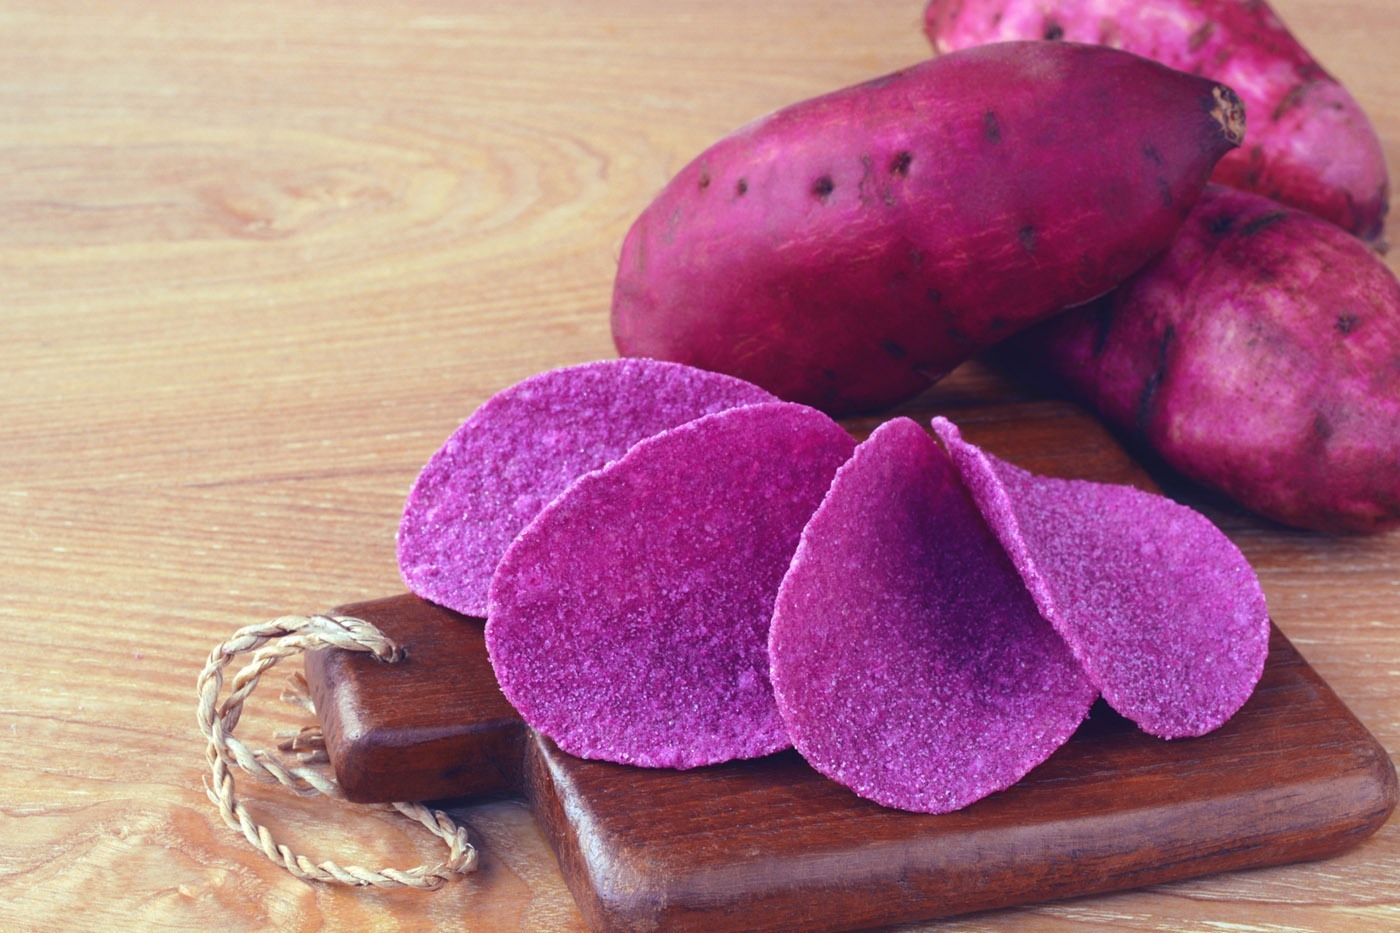 Картошка овощ или фрукт. Фиолетовый батат. Картофель батат сладкий фиолетовый. Пурпурный батат. Сорт картофеля перуанский фиолетовый (Purple Peruvian).